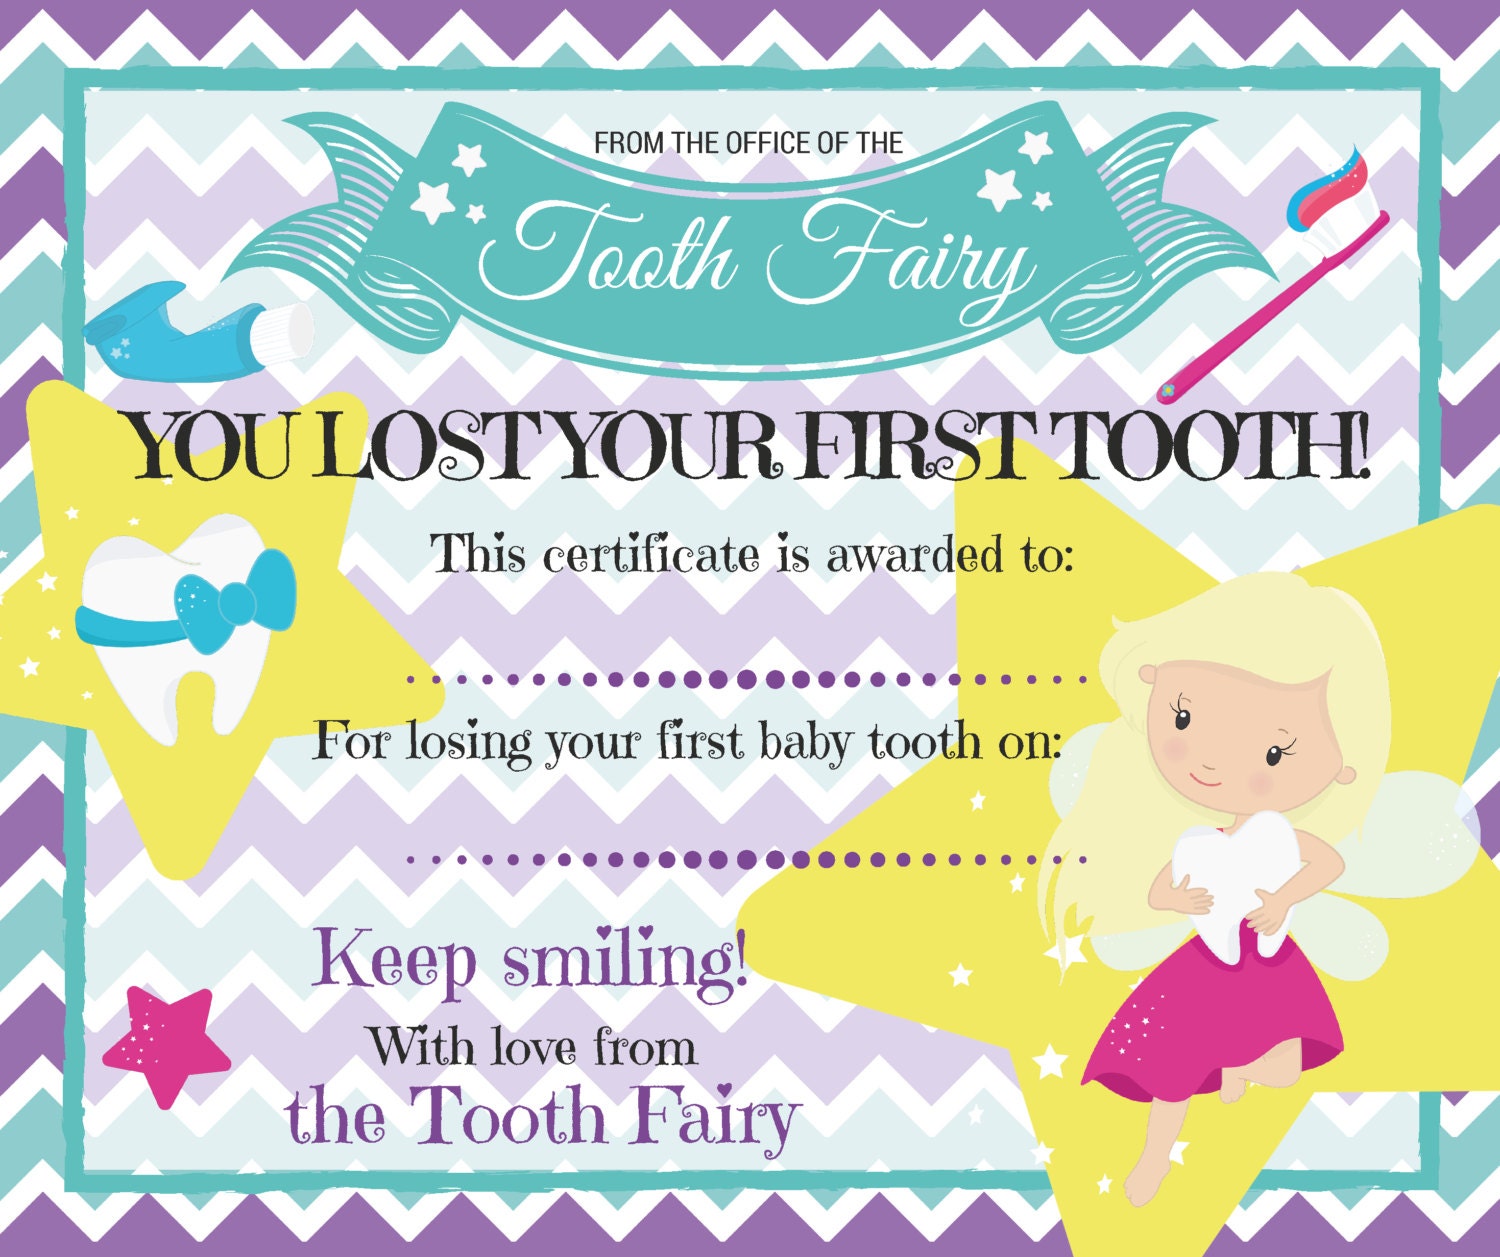 tooth fairy original story